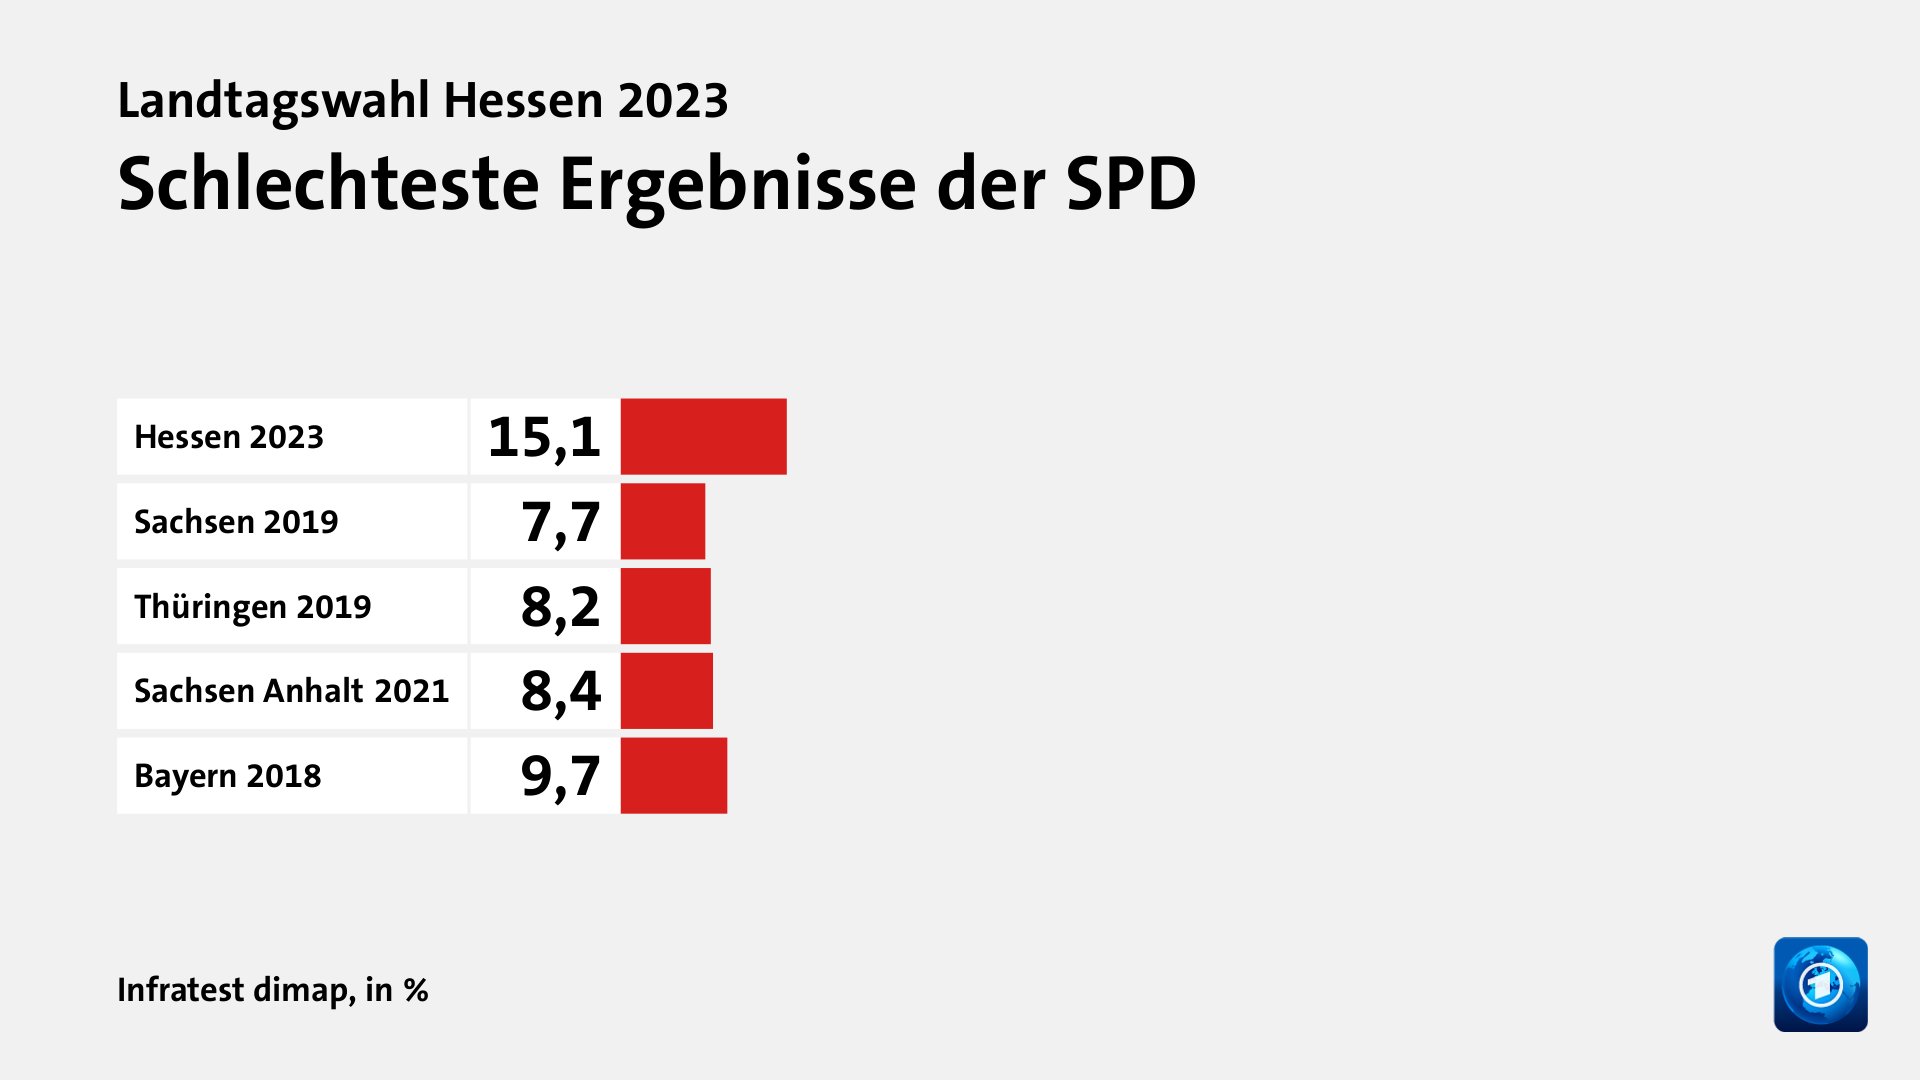 Schlechteste Ergebnisse der SPD, in %: Hessen 2023 15, Sachsen 2019 7, Thüringen 2019 8, Sachsen Anhalt 2021 8, Bayern 2018 9, Quelle: Infratest dimap